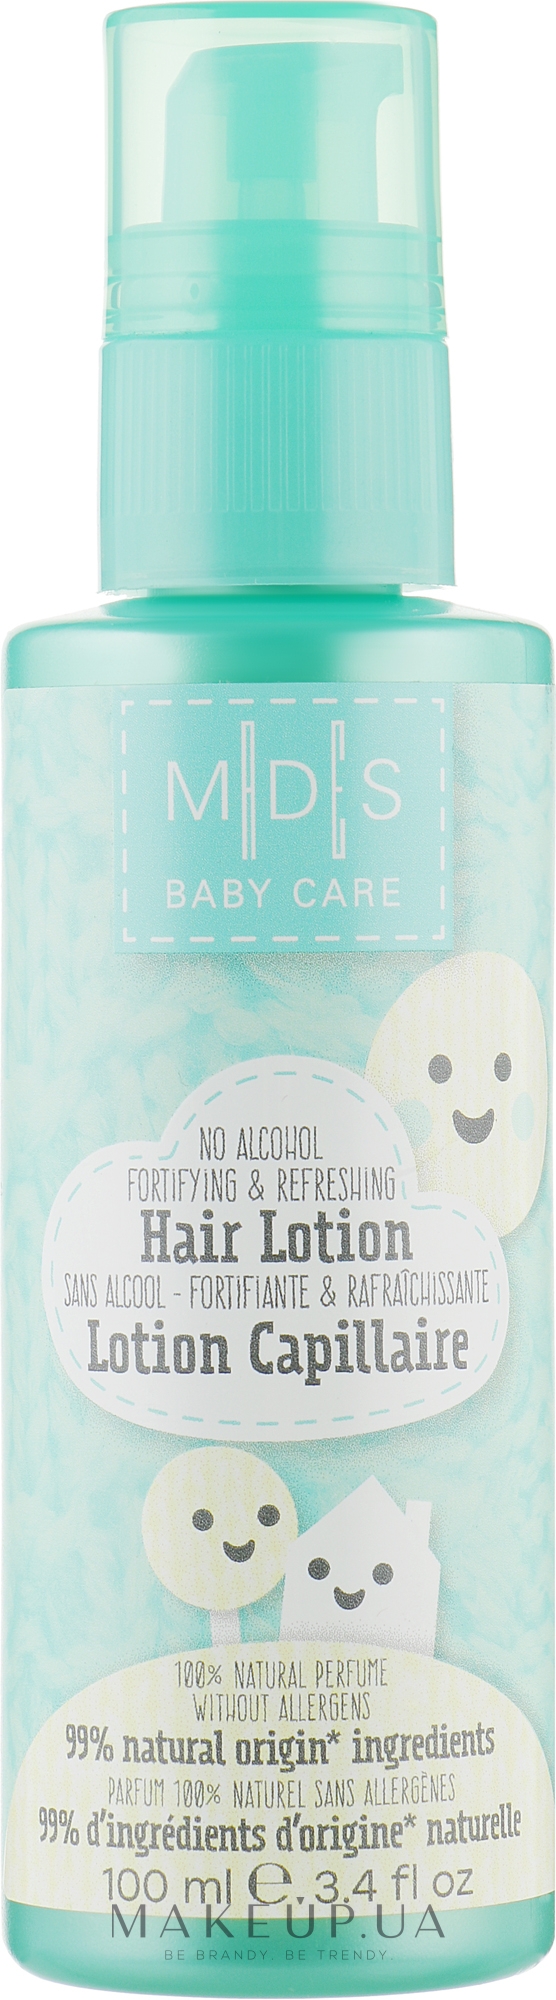 Органический лосьон для волос и кожи головы ребенка - Mades Cosmetics M|D|S Baby Care Hair Lotion — фото 100ml